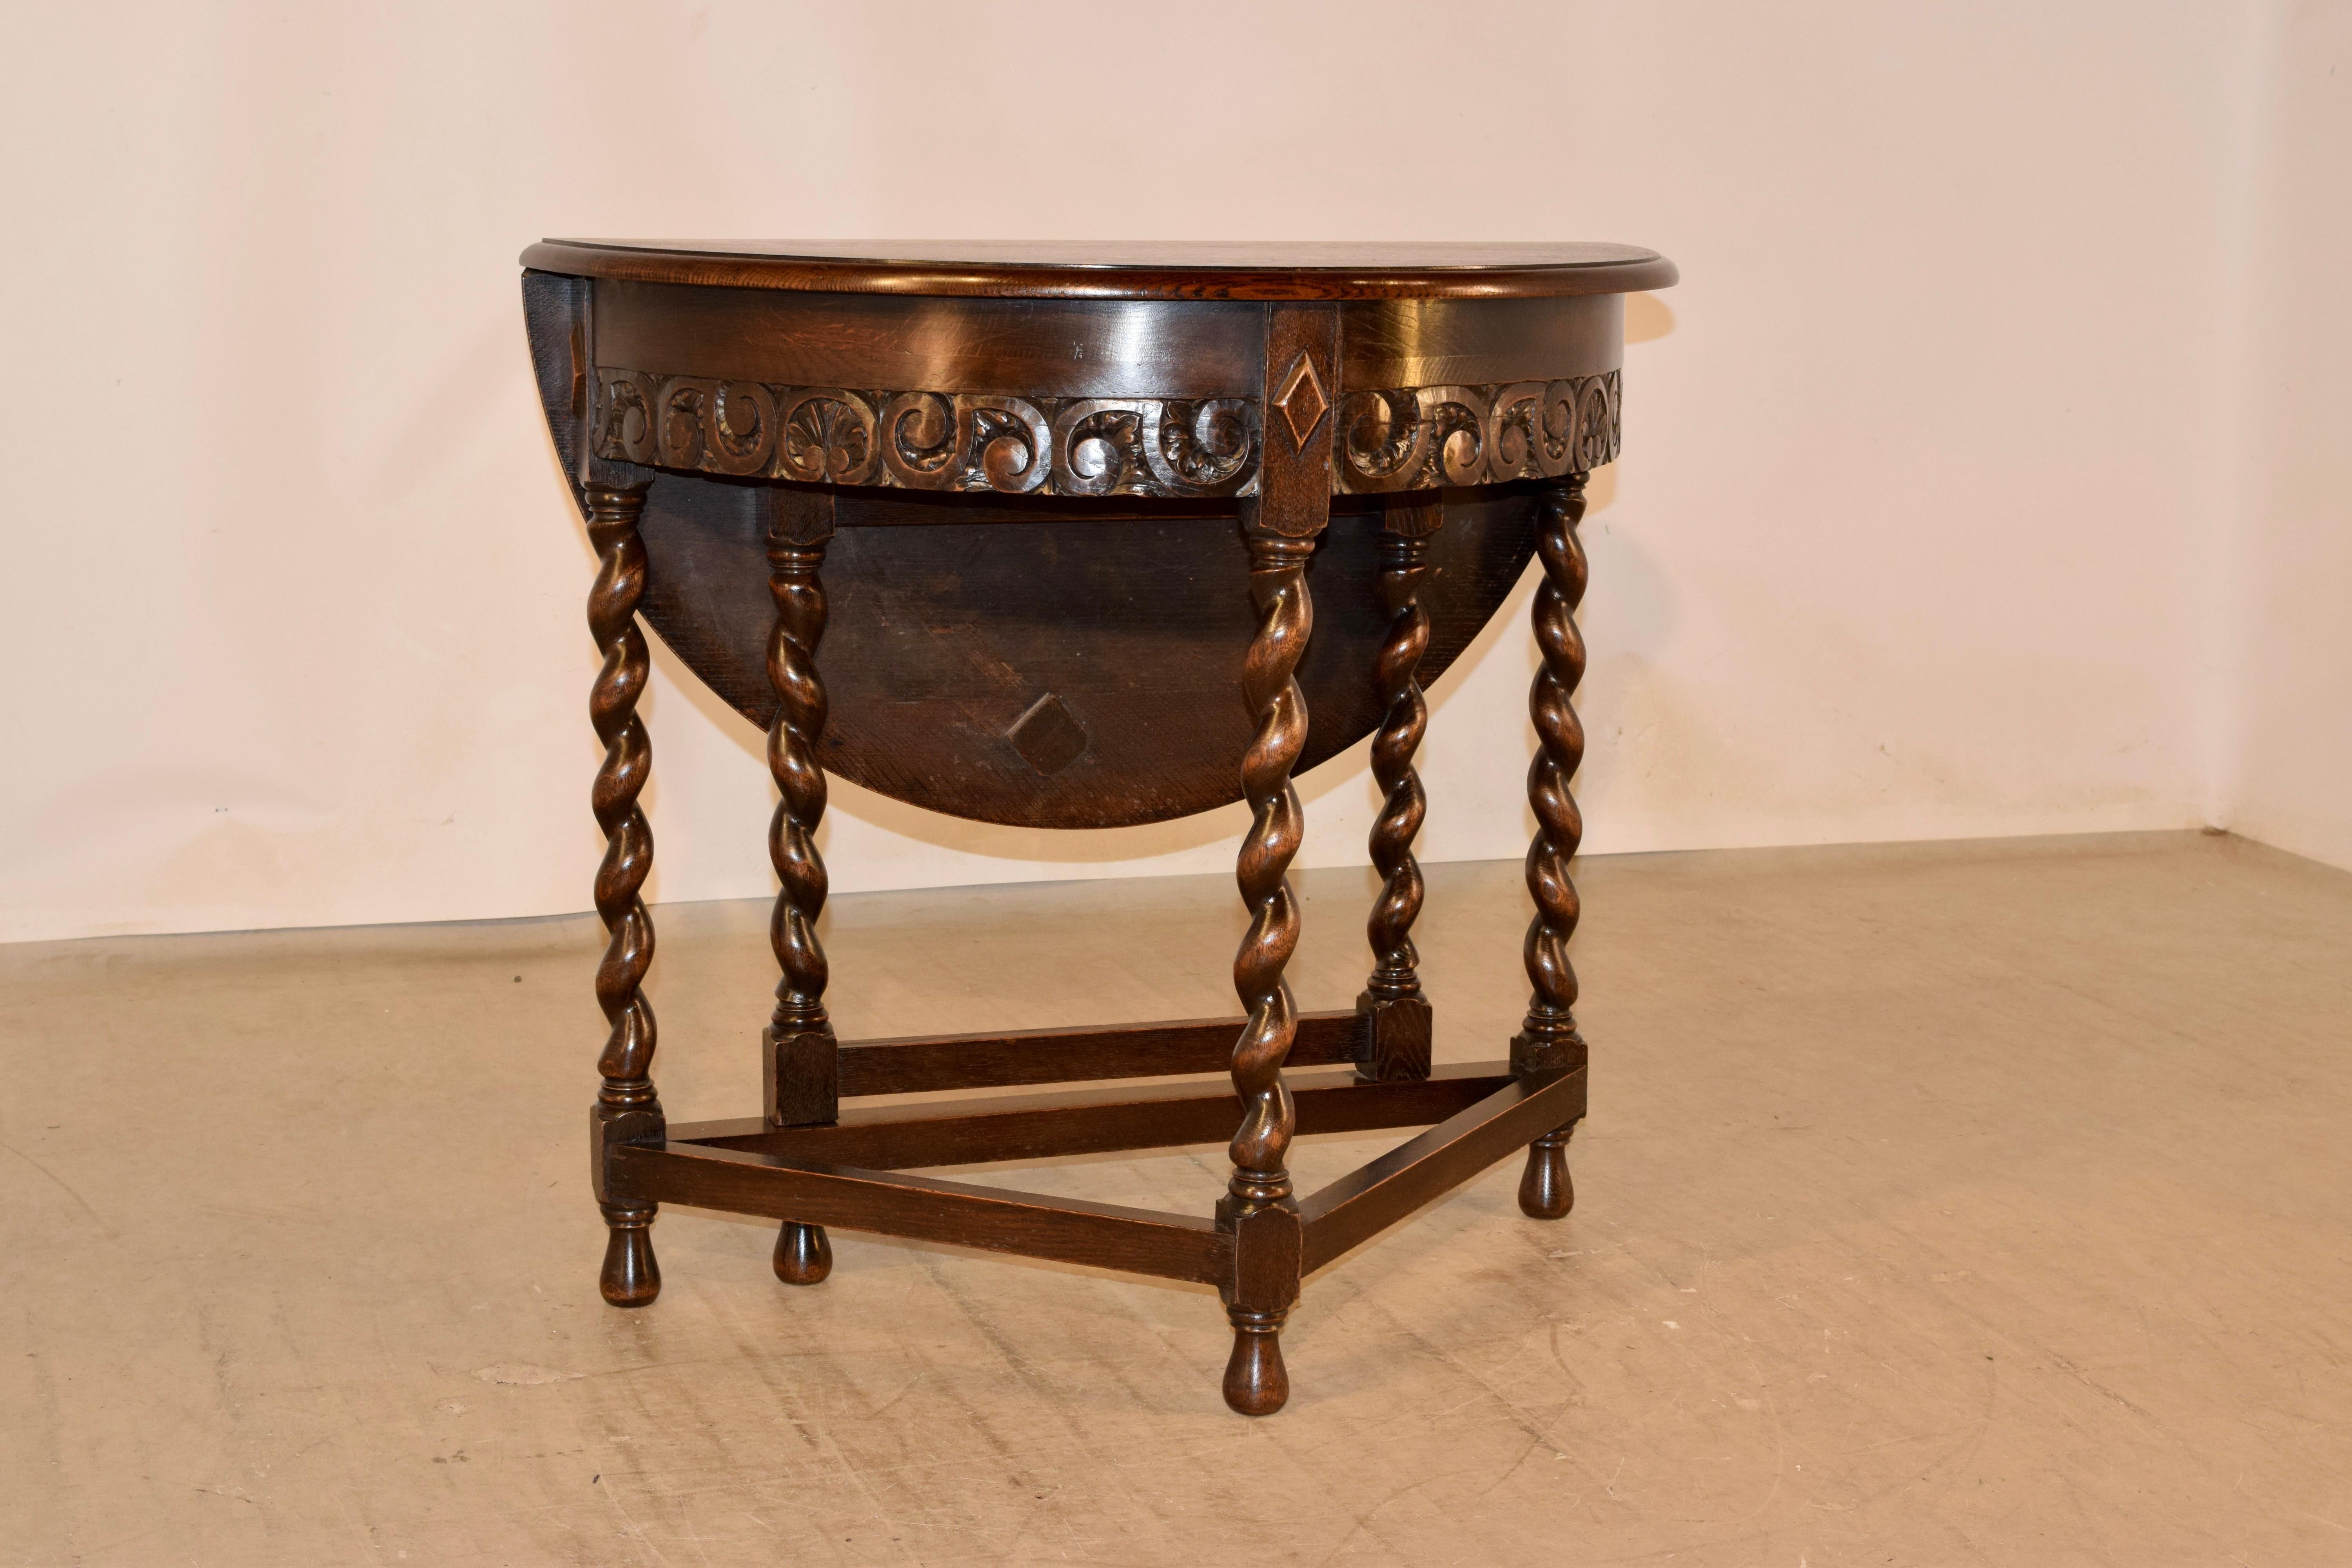 Englischer Demi-Lune-Tisch aus Eiche aus dem späten 19. Jahrhundert mit heruntergelassener Platte. Die Spitze ist rund, wenn das Blatt angehoben ist und misst 33 Zoll im Durchmesser. Die Platte hat eine abgeschrägte Kante und geht in eine Schürze